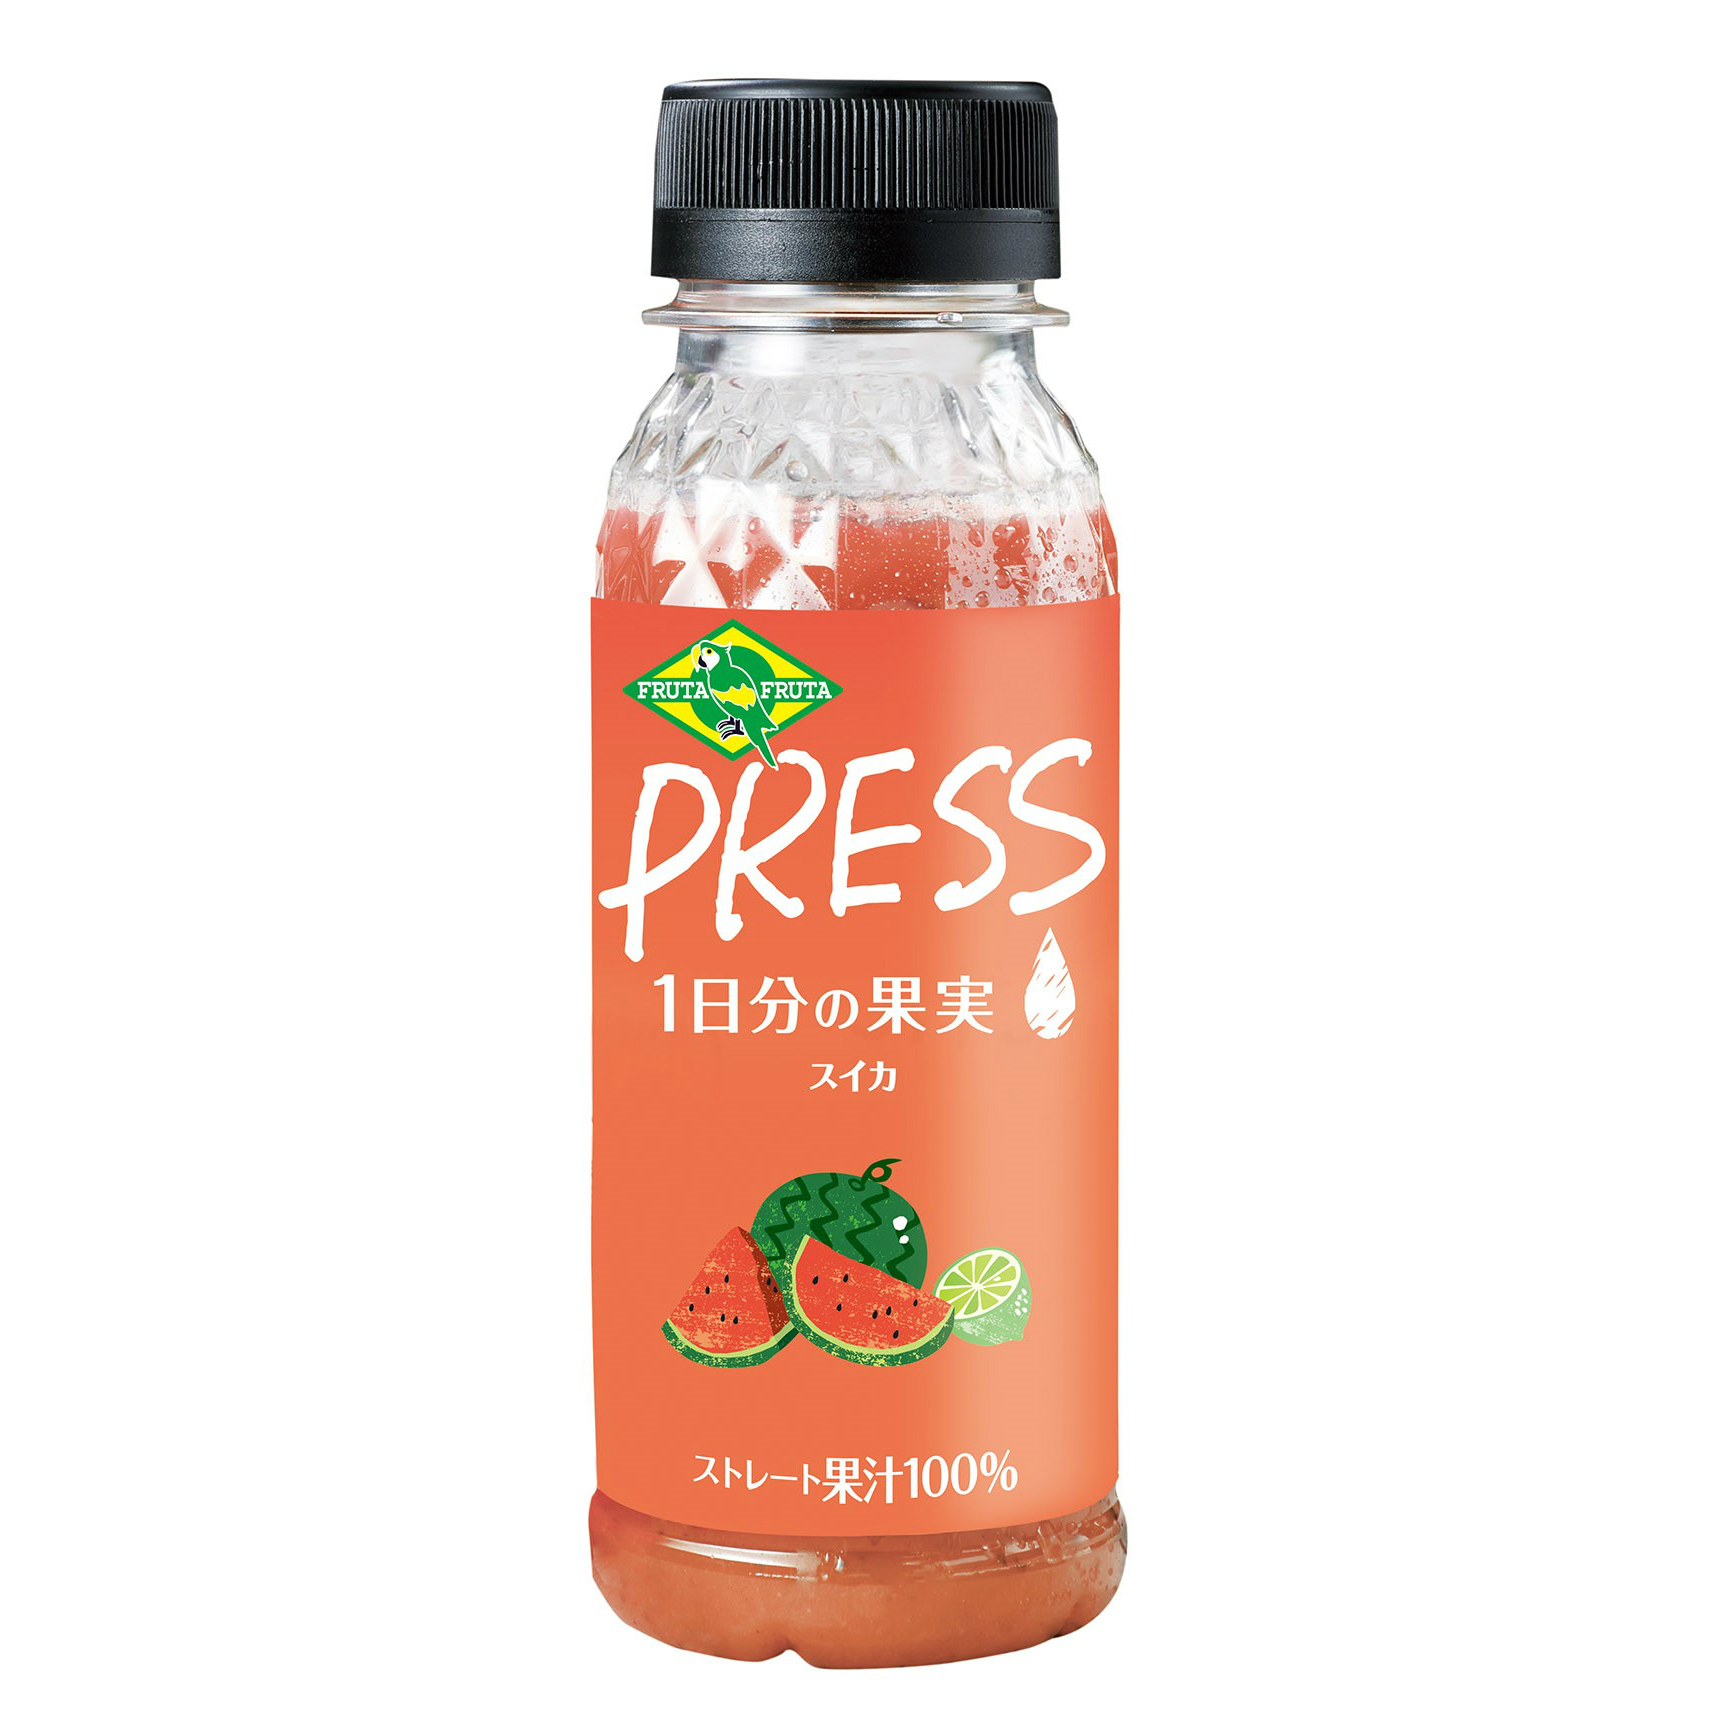 本日発売 スイカとライムの果汁100 コールドプレスジュース フルッタフルッタ公式ブログ